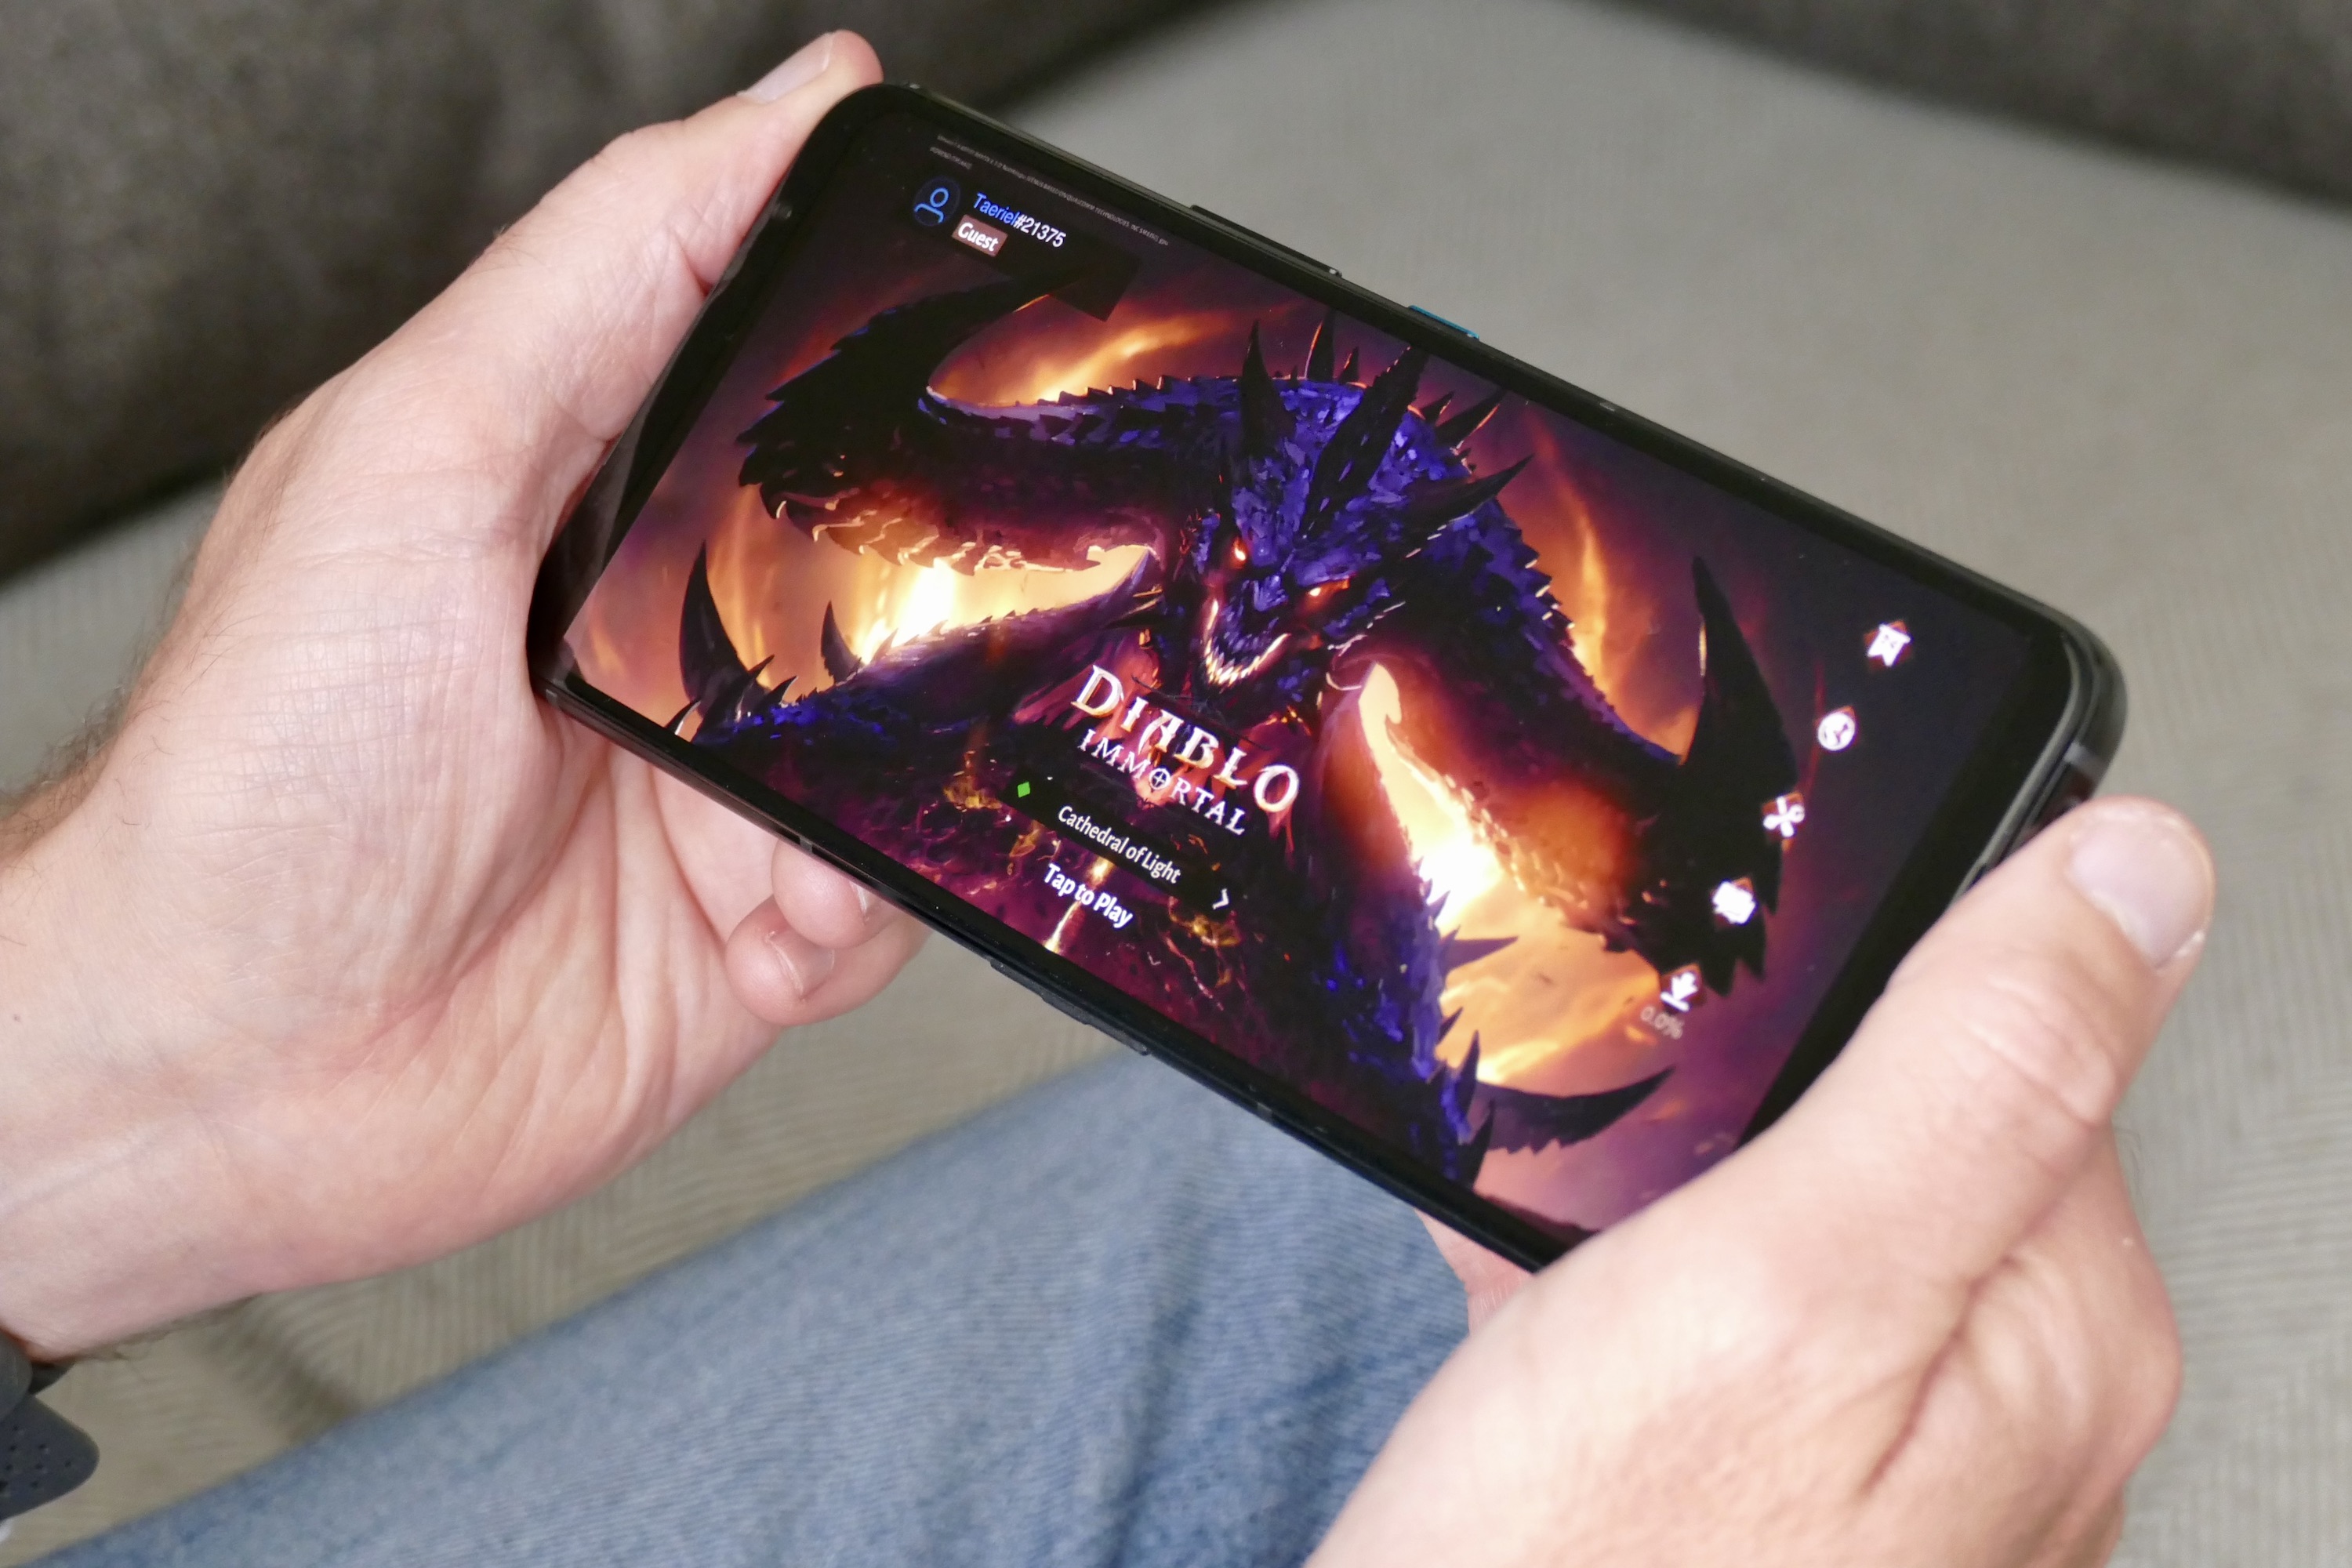 Tela principal de Diablo Immortal no Asus ROG Phone 5.